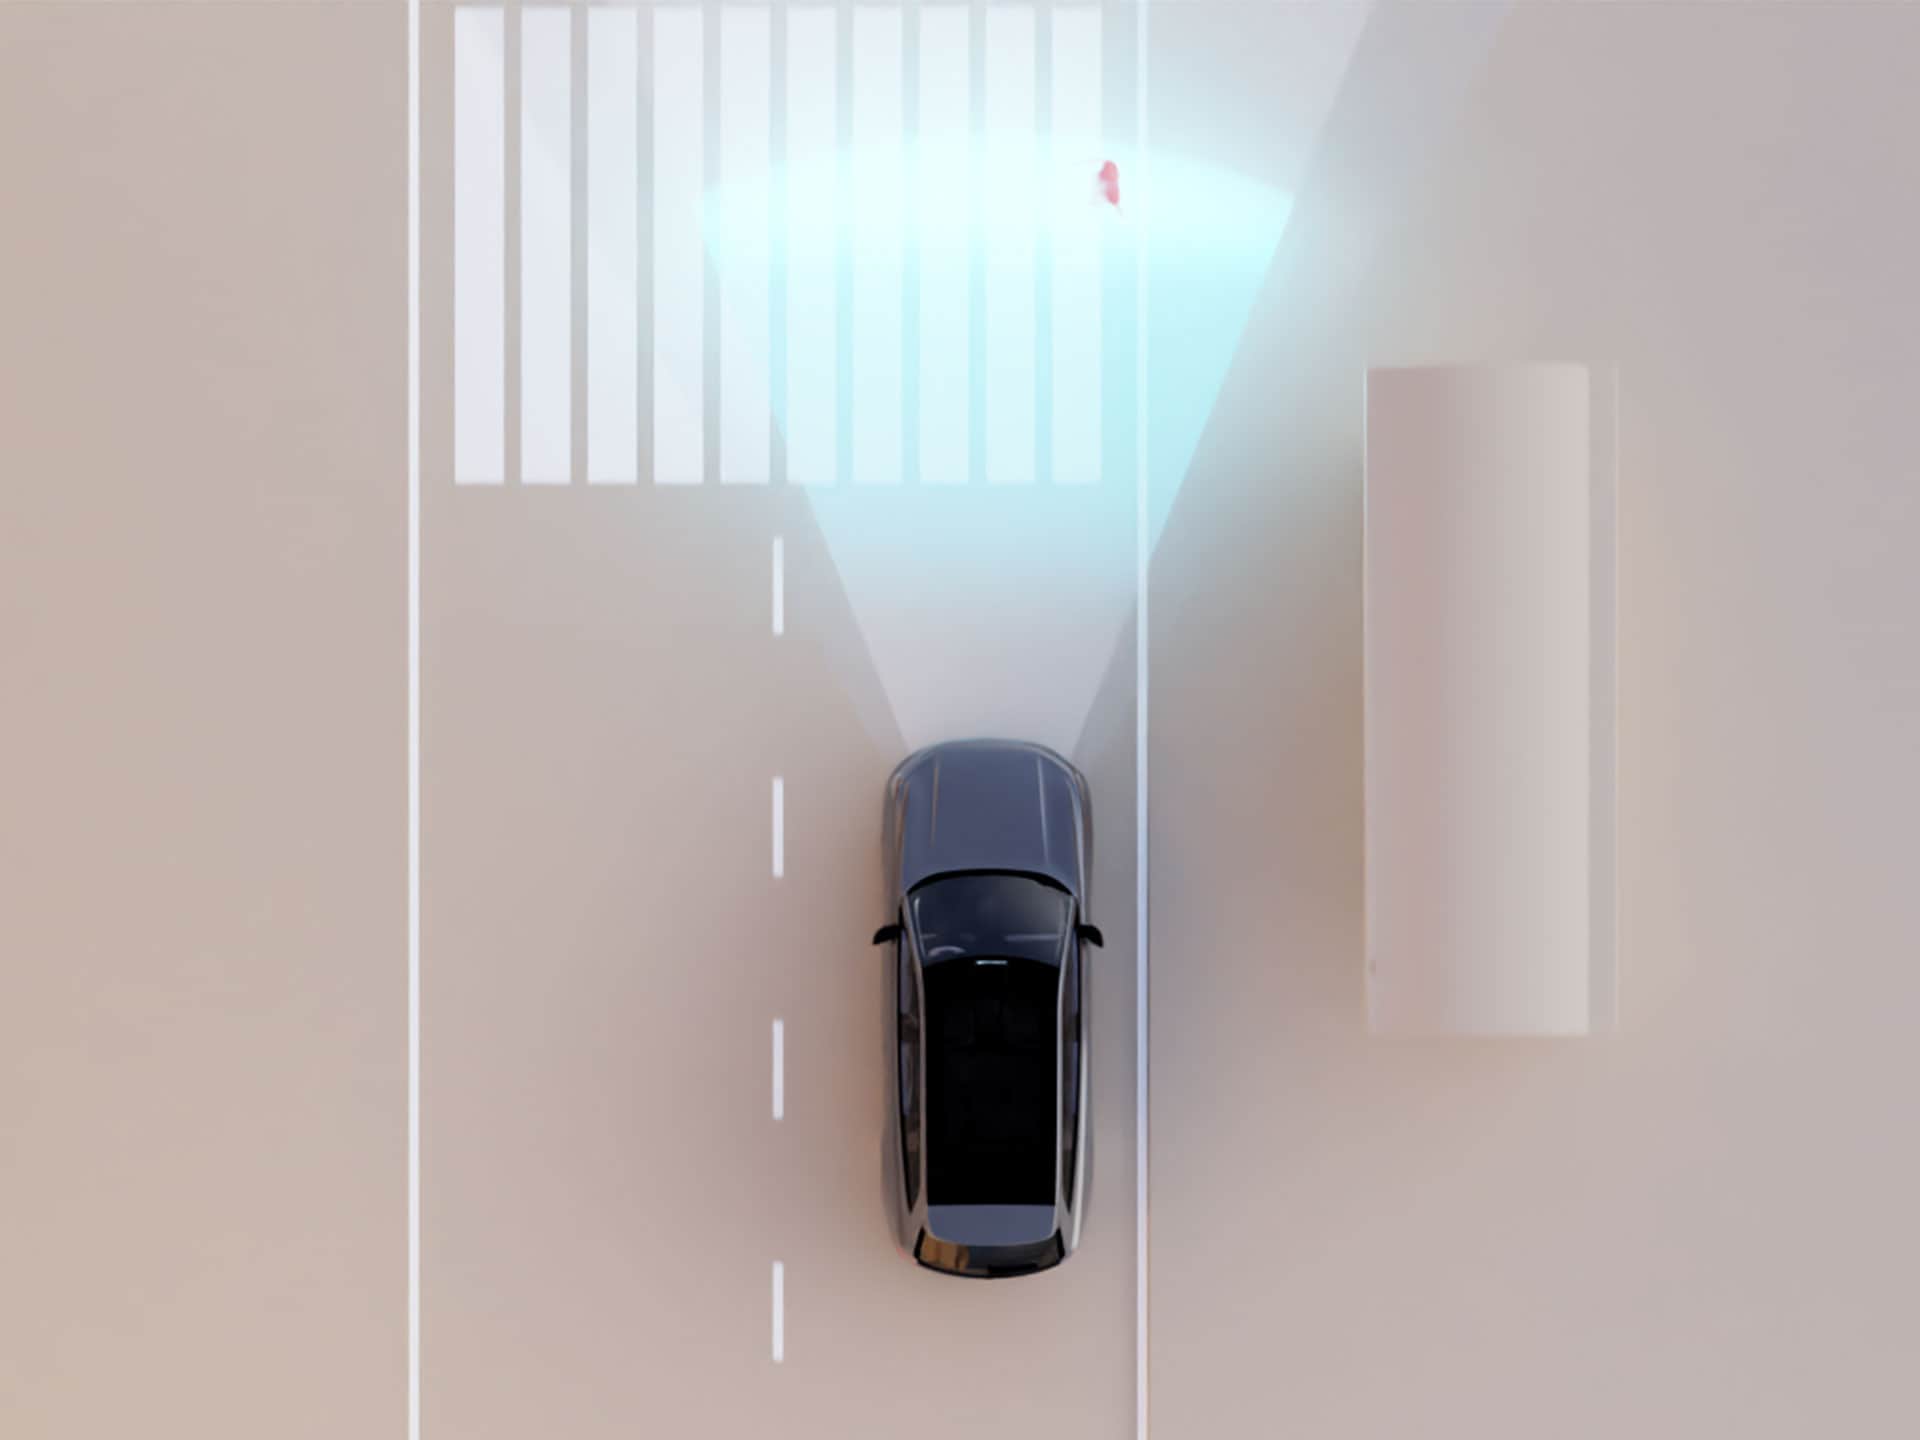 Een geïllustreerde weergave van de detectietechnologie van Volvo Cars die een voetganger op een zebrapad detecteert.